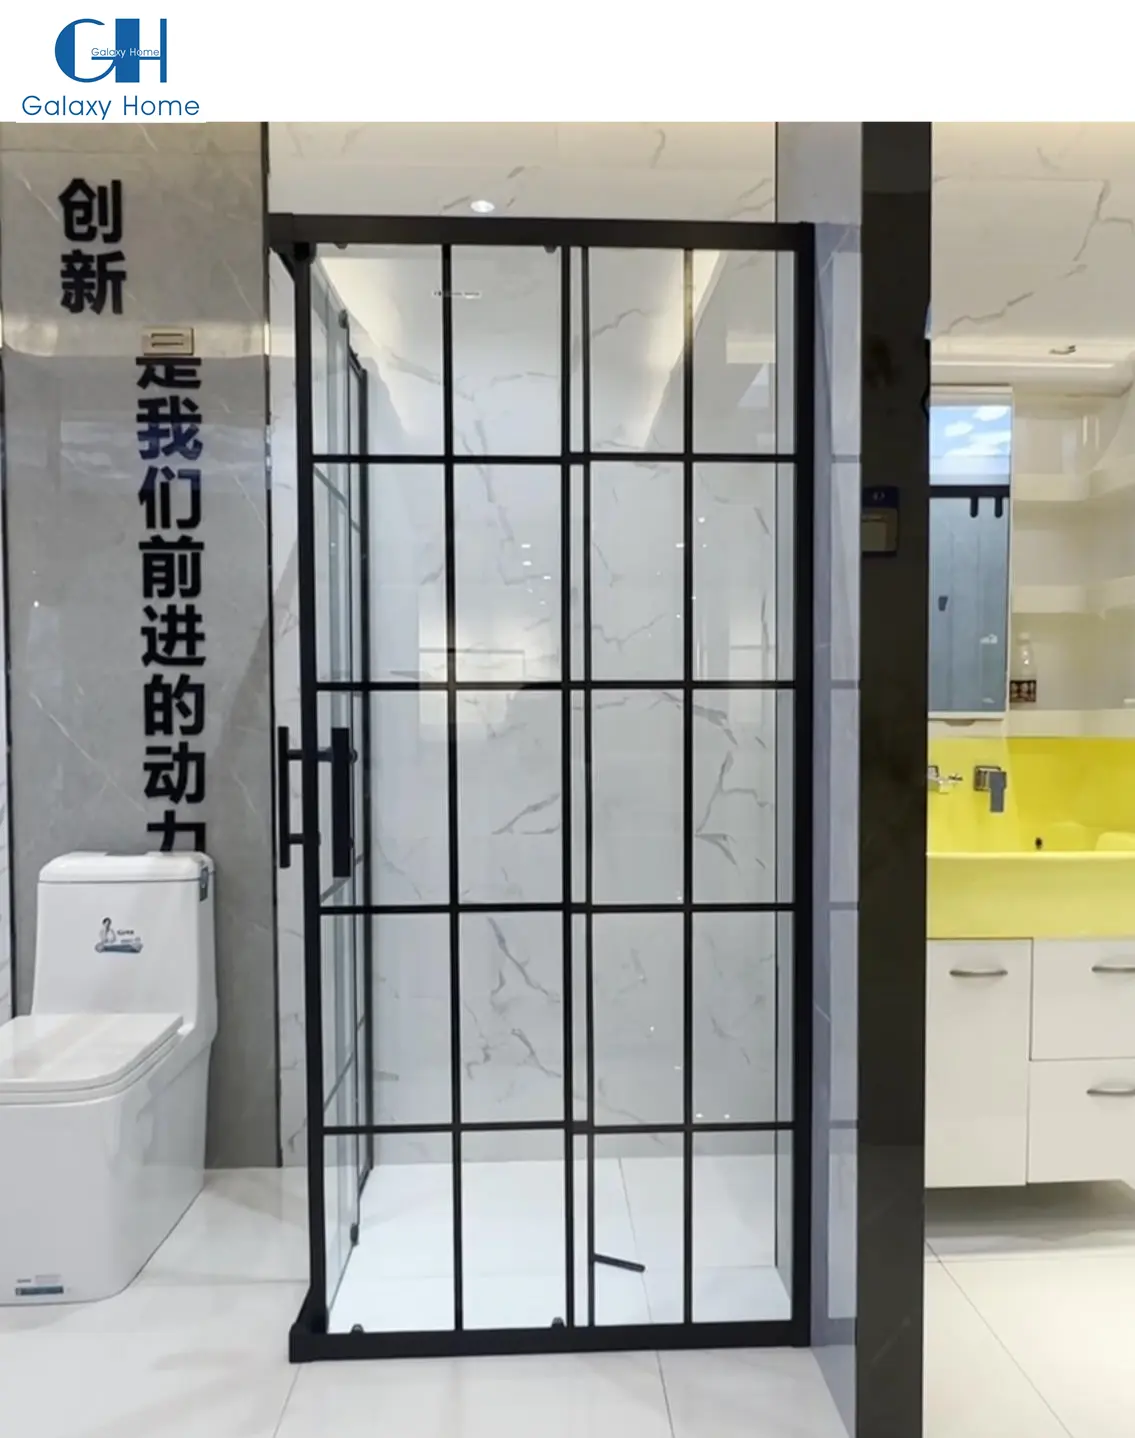 Ducha de estilo francés de acero inoxidable, dos puertas corredizas, baño de vidrio negro, cabina de ducha con marco